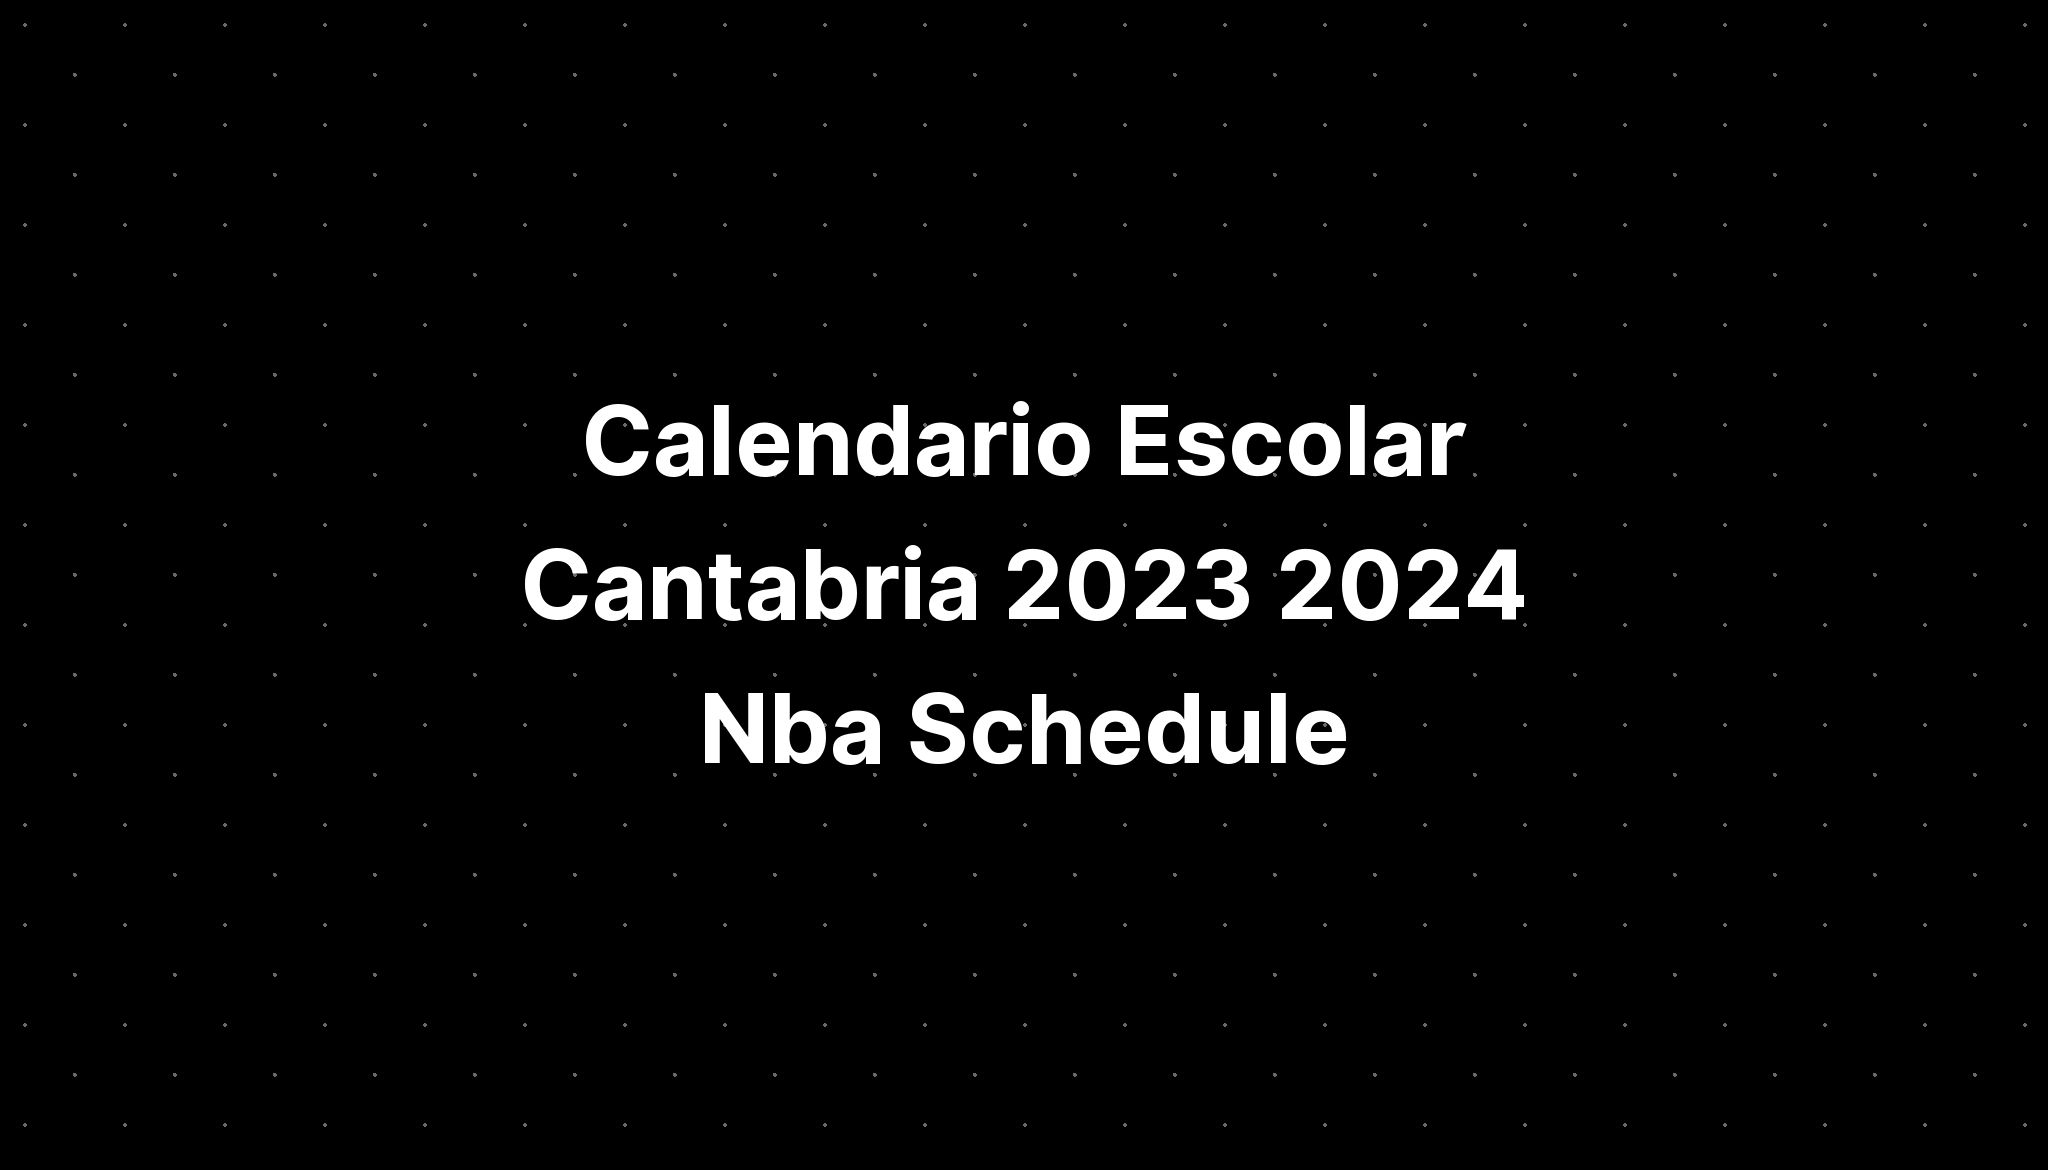 Calendario Escolar Cantabria 2023 2024 Nba Schedule - IMAGESEE